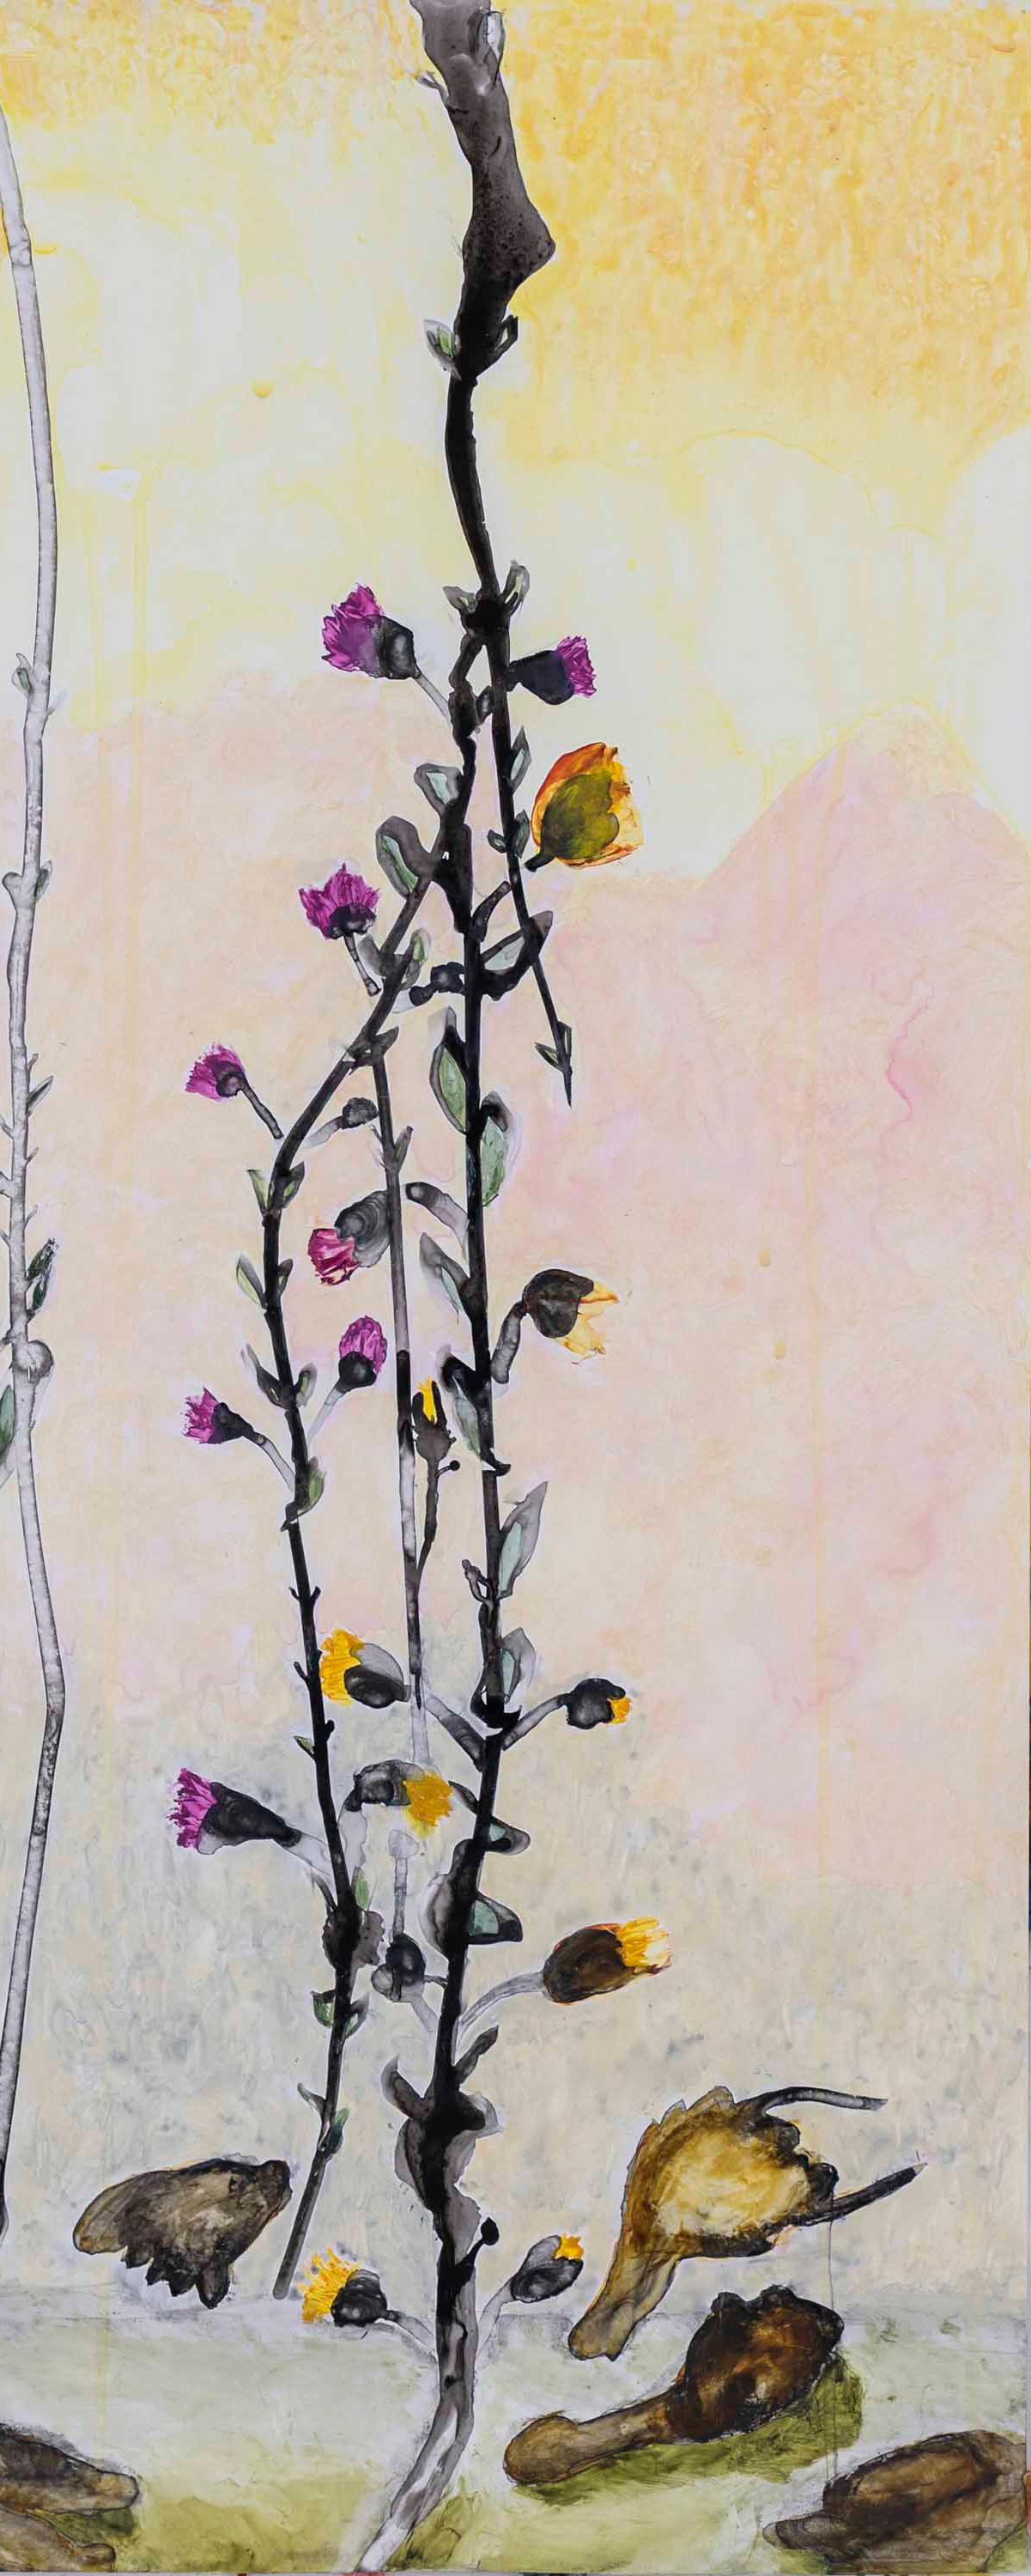  End of Season de l'artiste texane Julie England est une technique mixte sur papier Yupo. La taille des  Fin de Fin de  La saison est de 37″ x 24″ Image 46″ x 32 3/4″ encadrée. L'Art est placé dans un cadre de galerie blanc ou neutre d'une